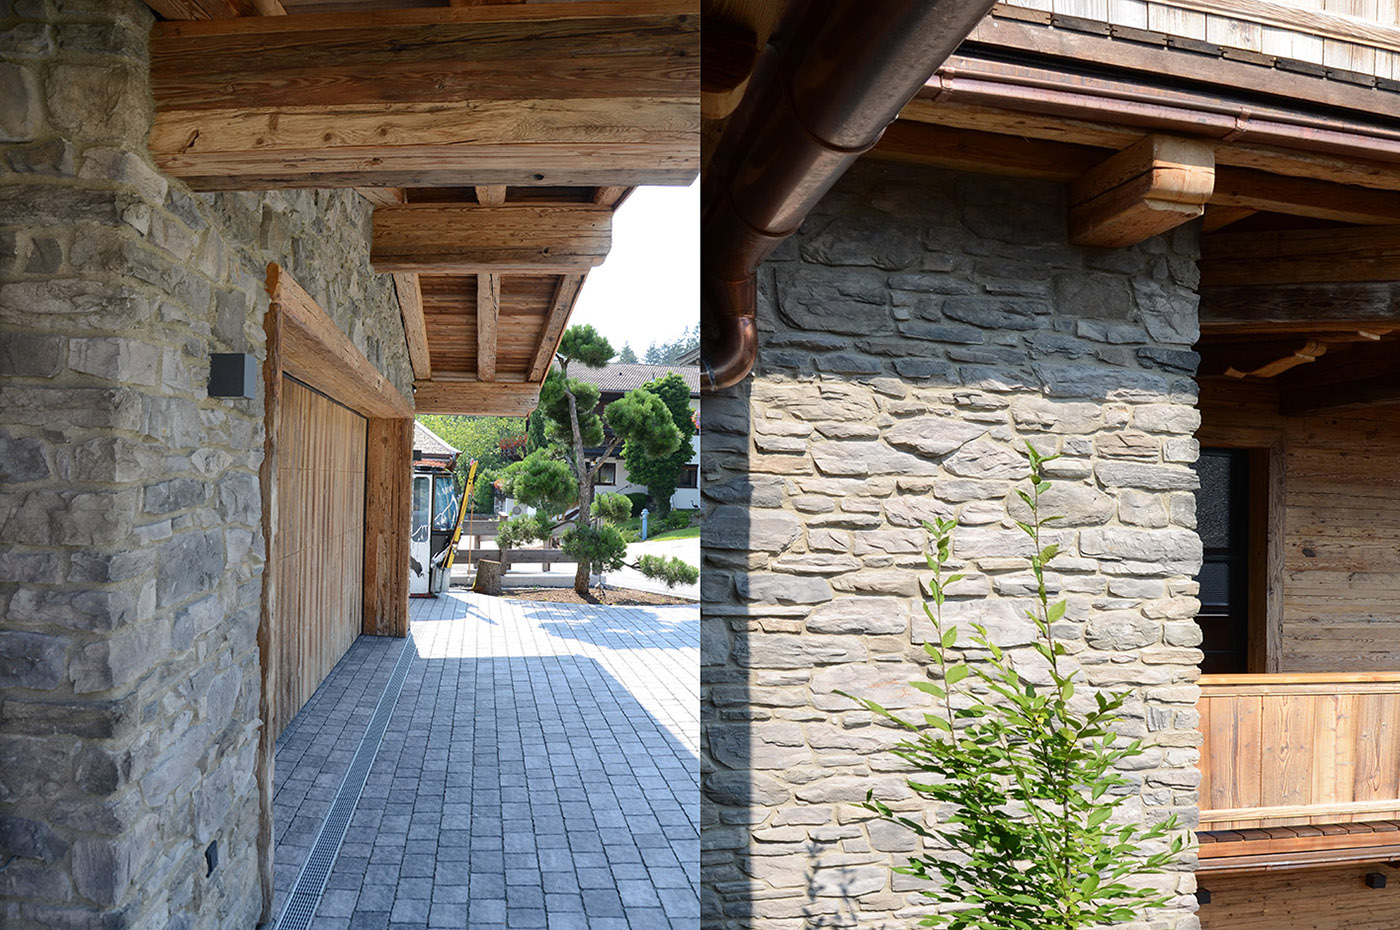 Villa tirolese in pietra e legno. Vivere il confort circondati dalla natura